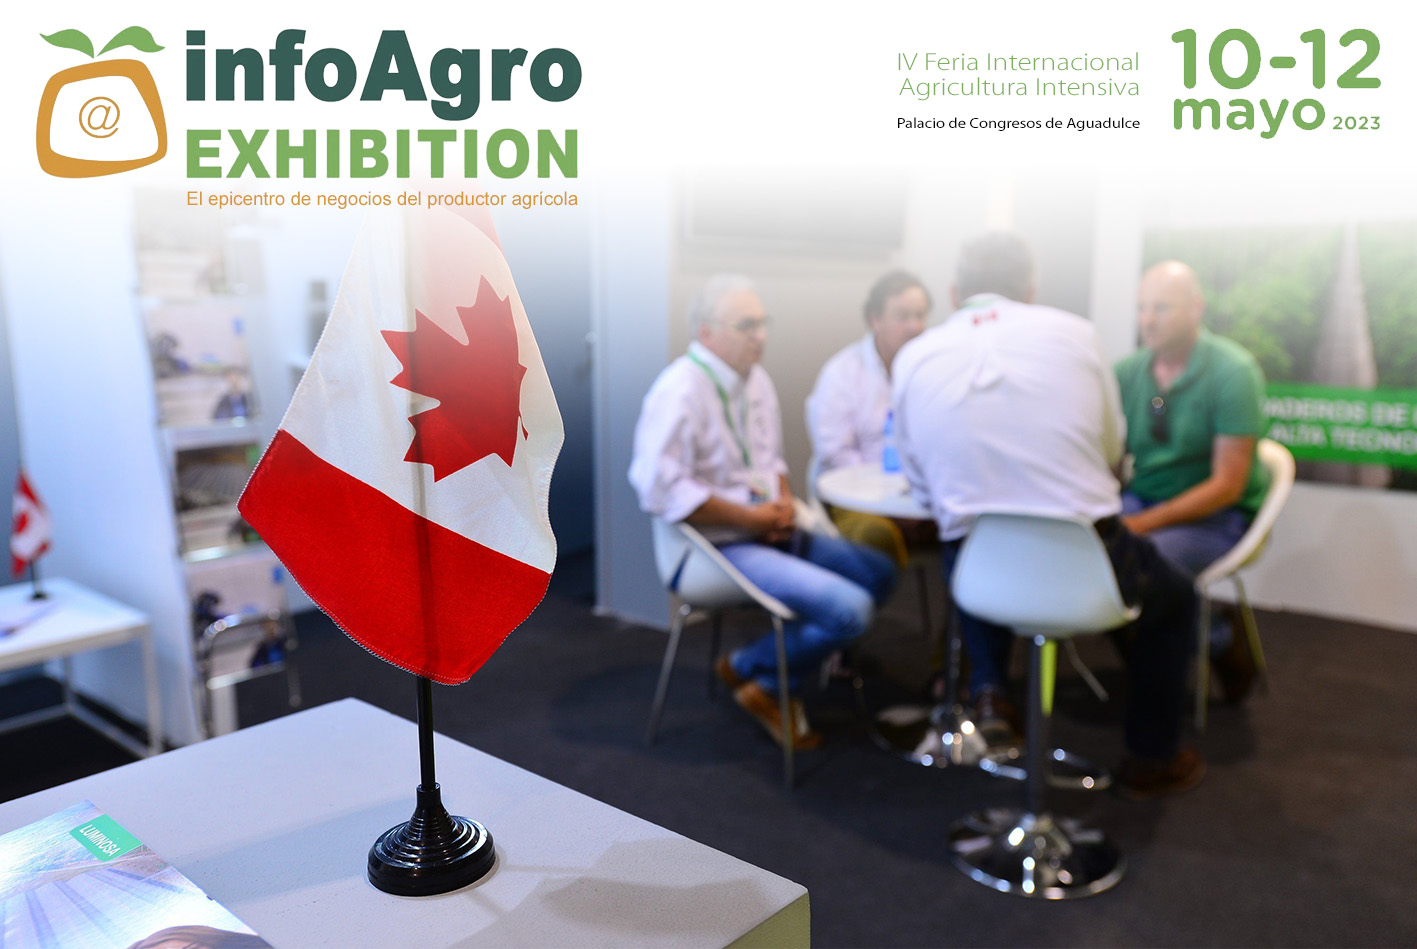 La alta participación de empresas extranjeras refleja la importancia de Infoagro Exhibition a nivel internacional